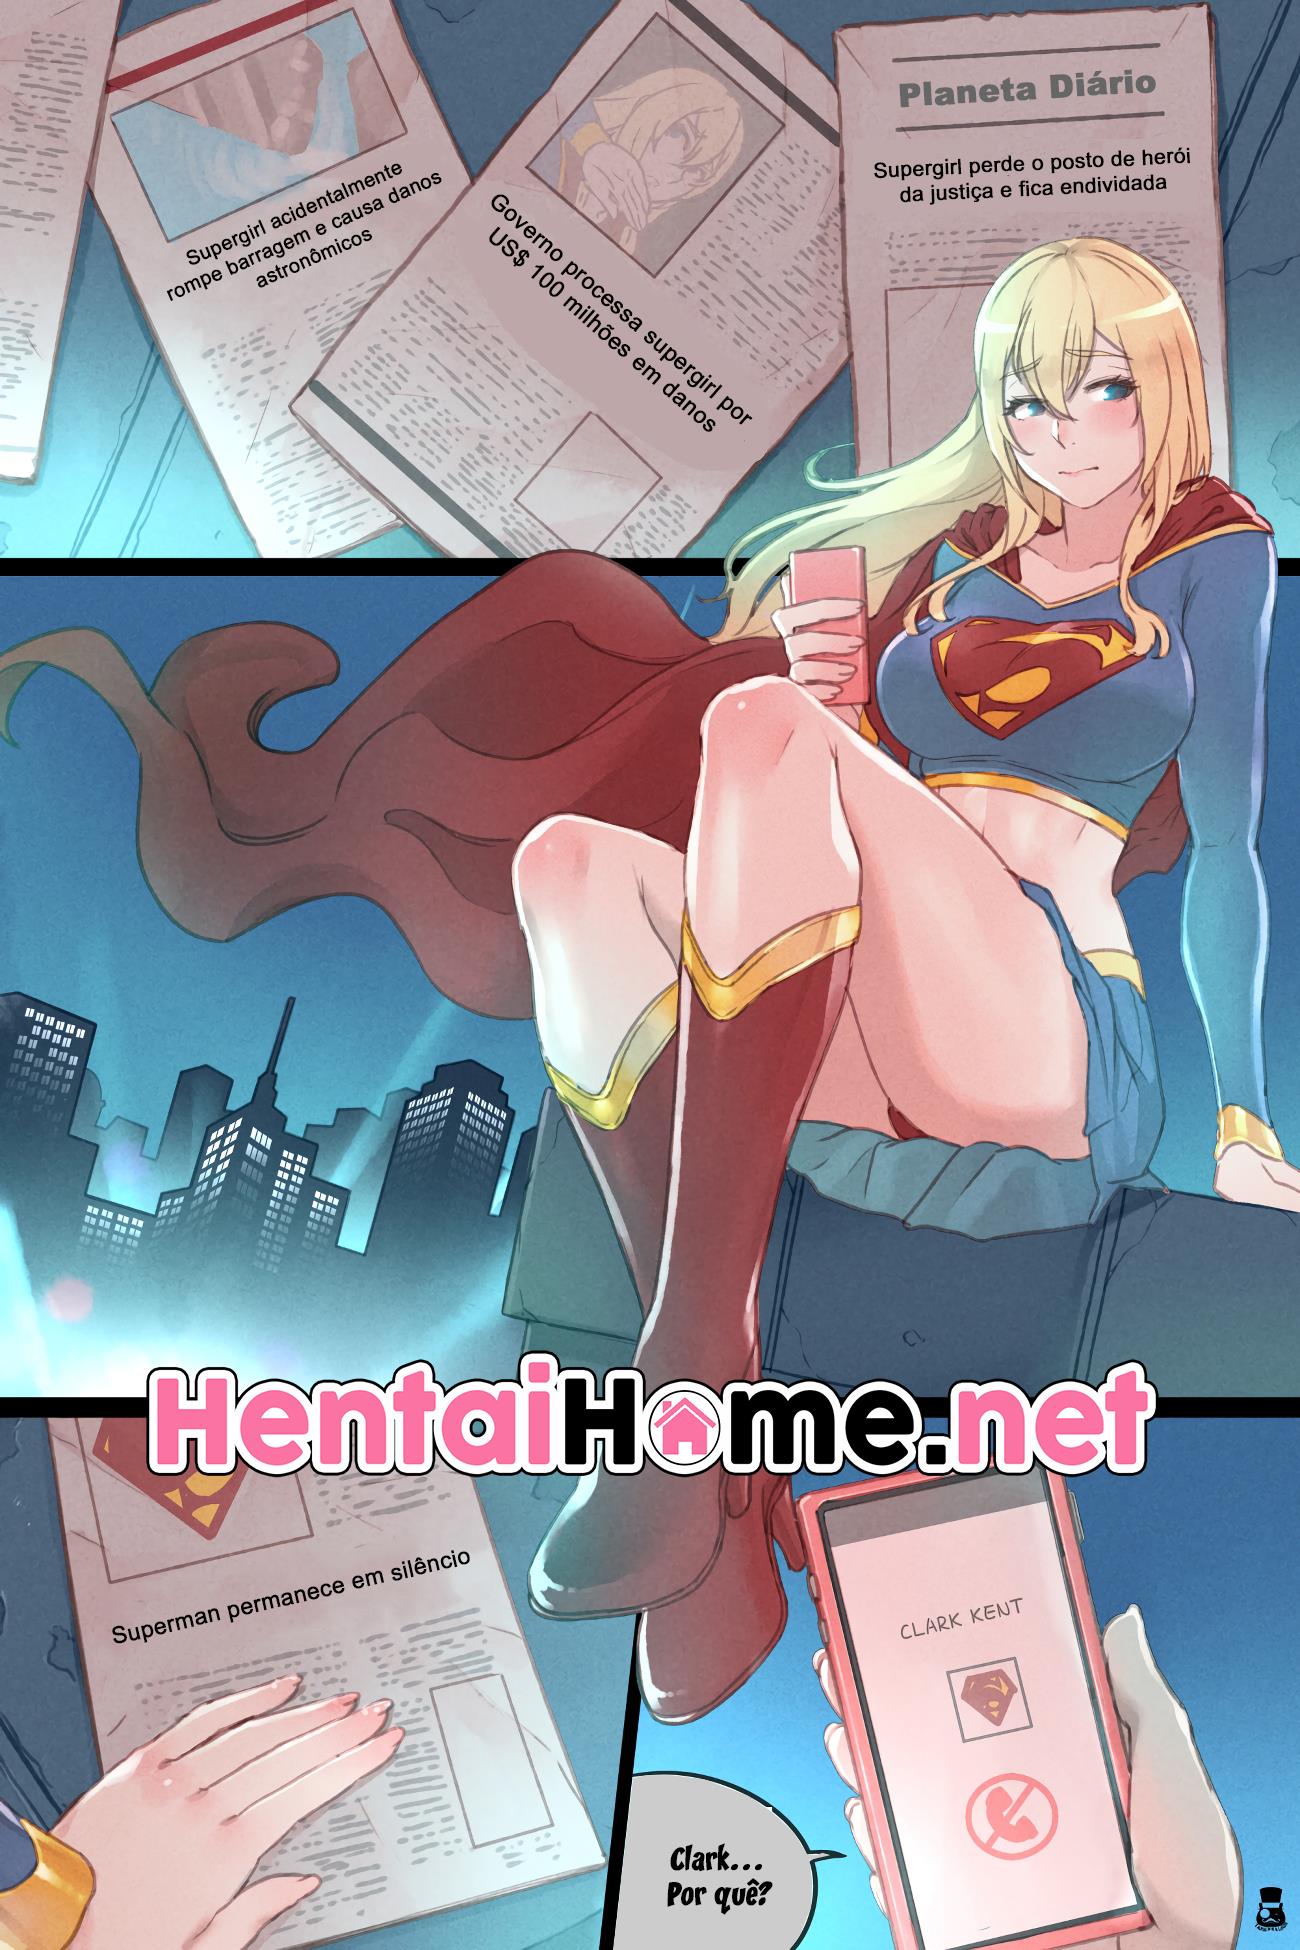 Supergirl heroína no cio